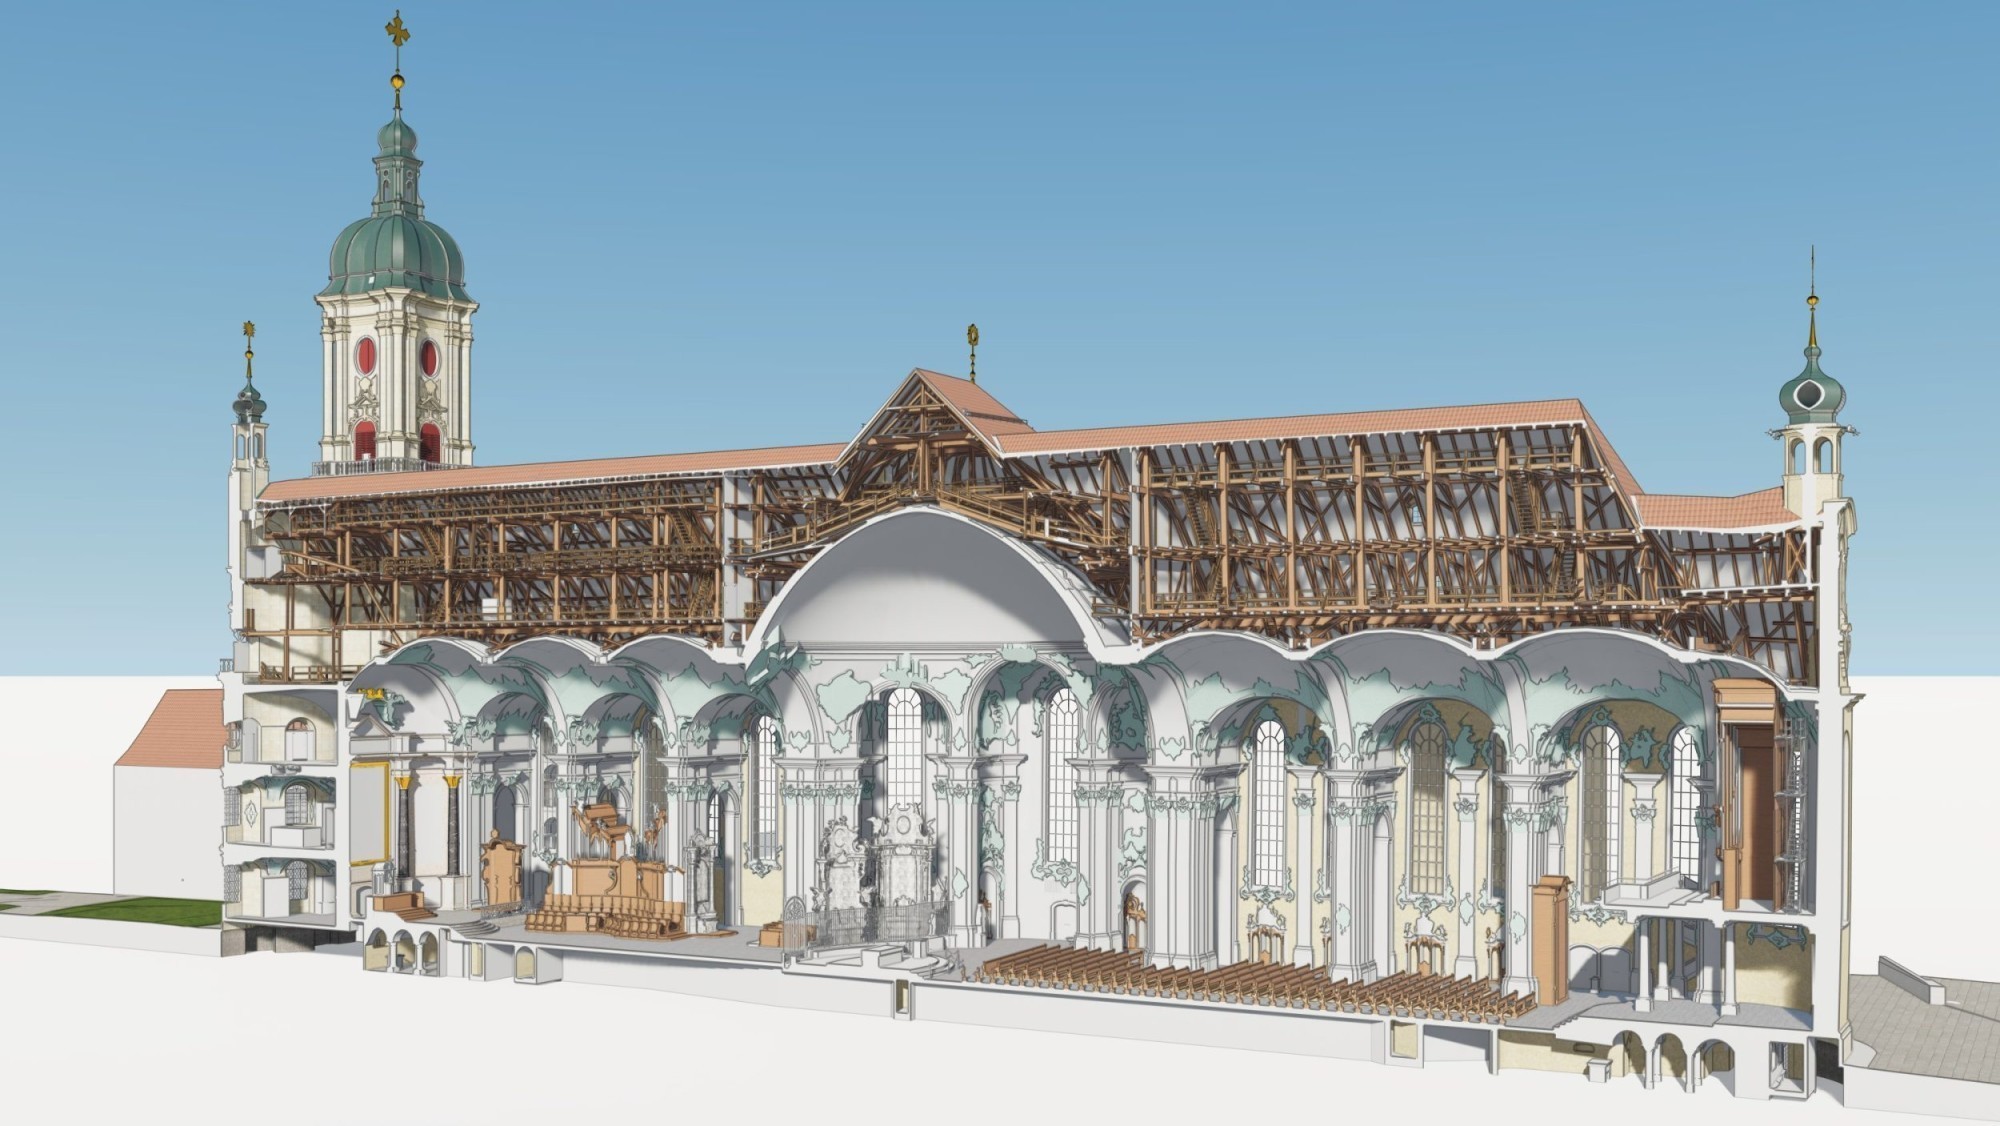 Le relevé de la cathédrale de l’abbaye de Saint-Gall a été achevé grâce à une numérisation 3D précise et détaillée.